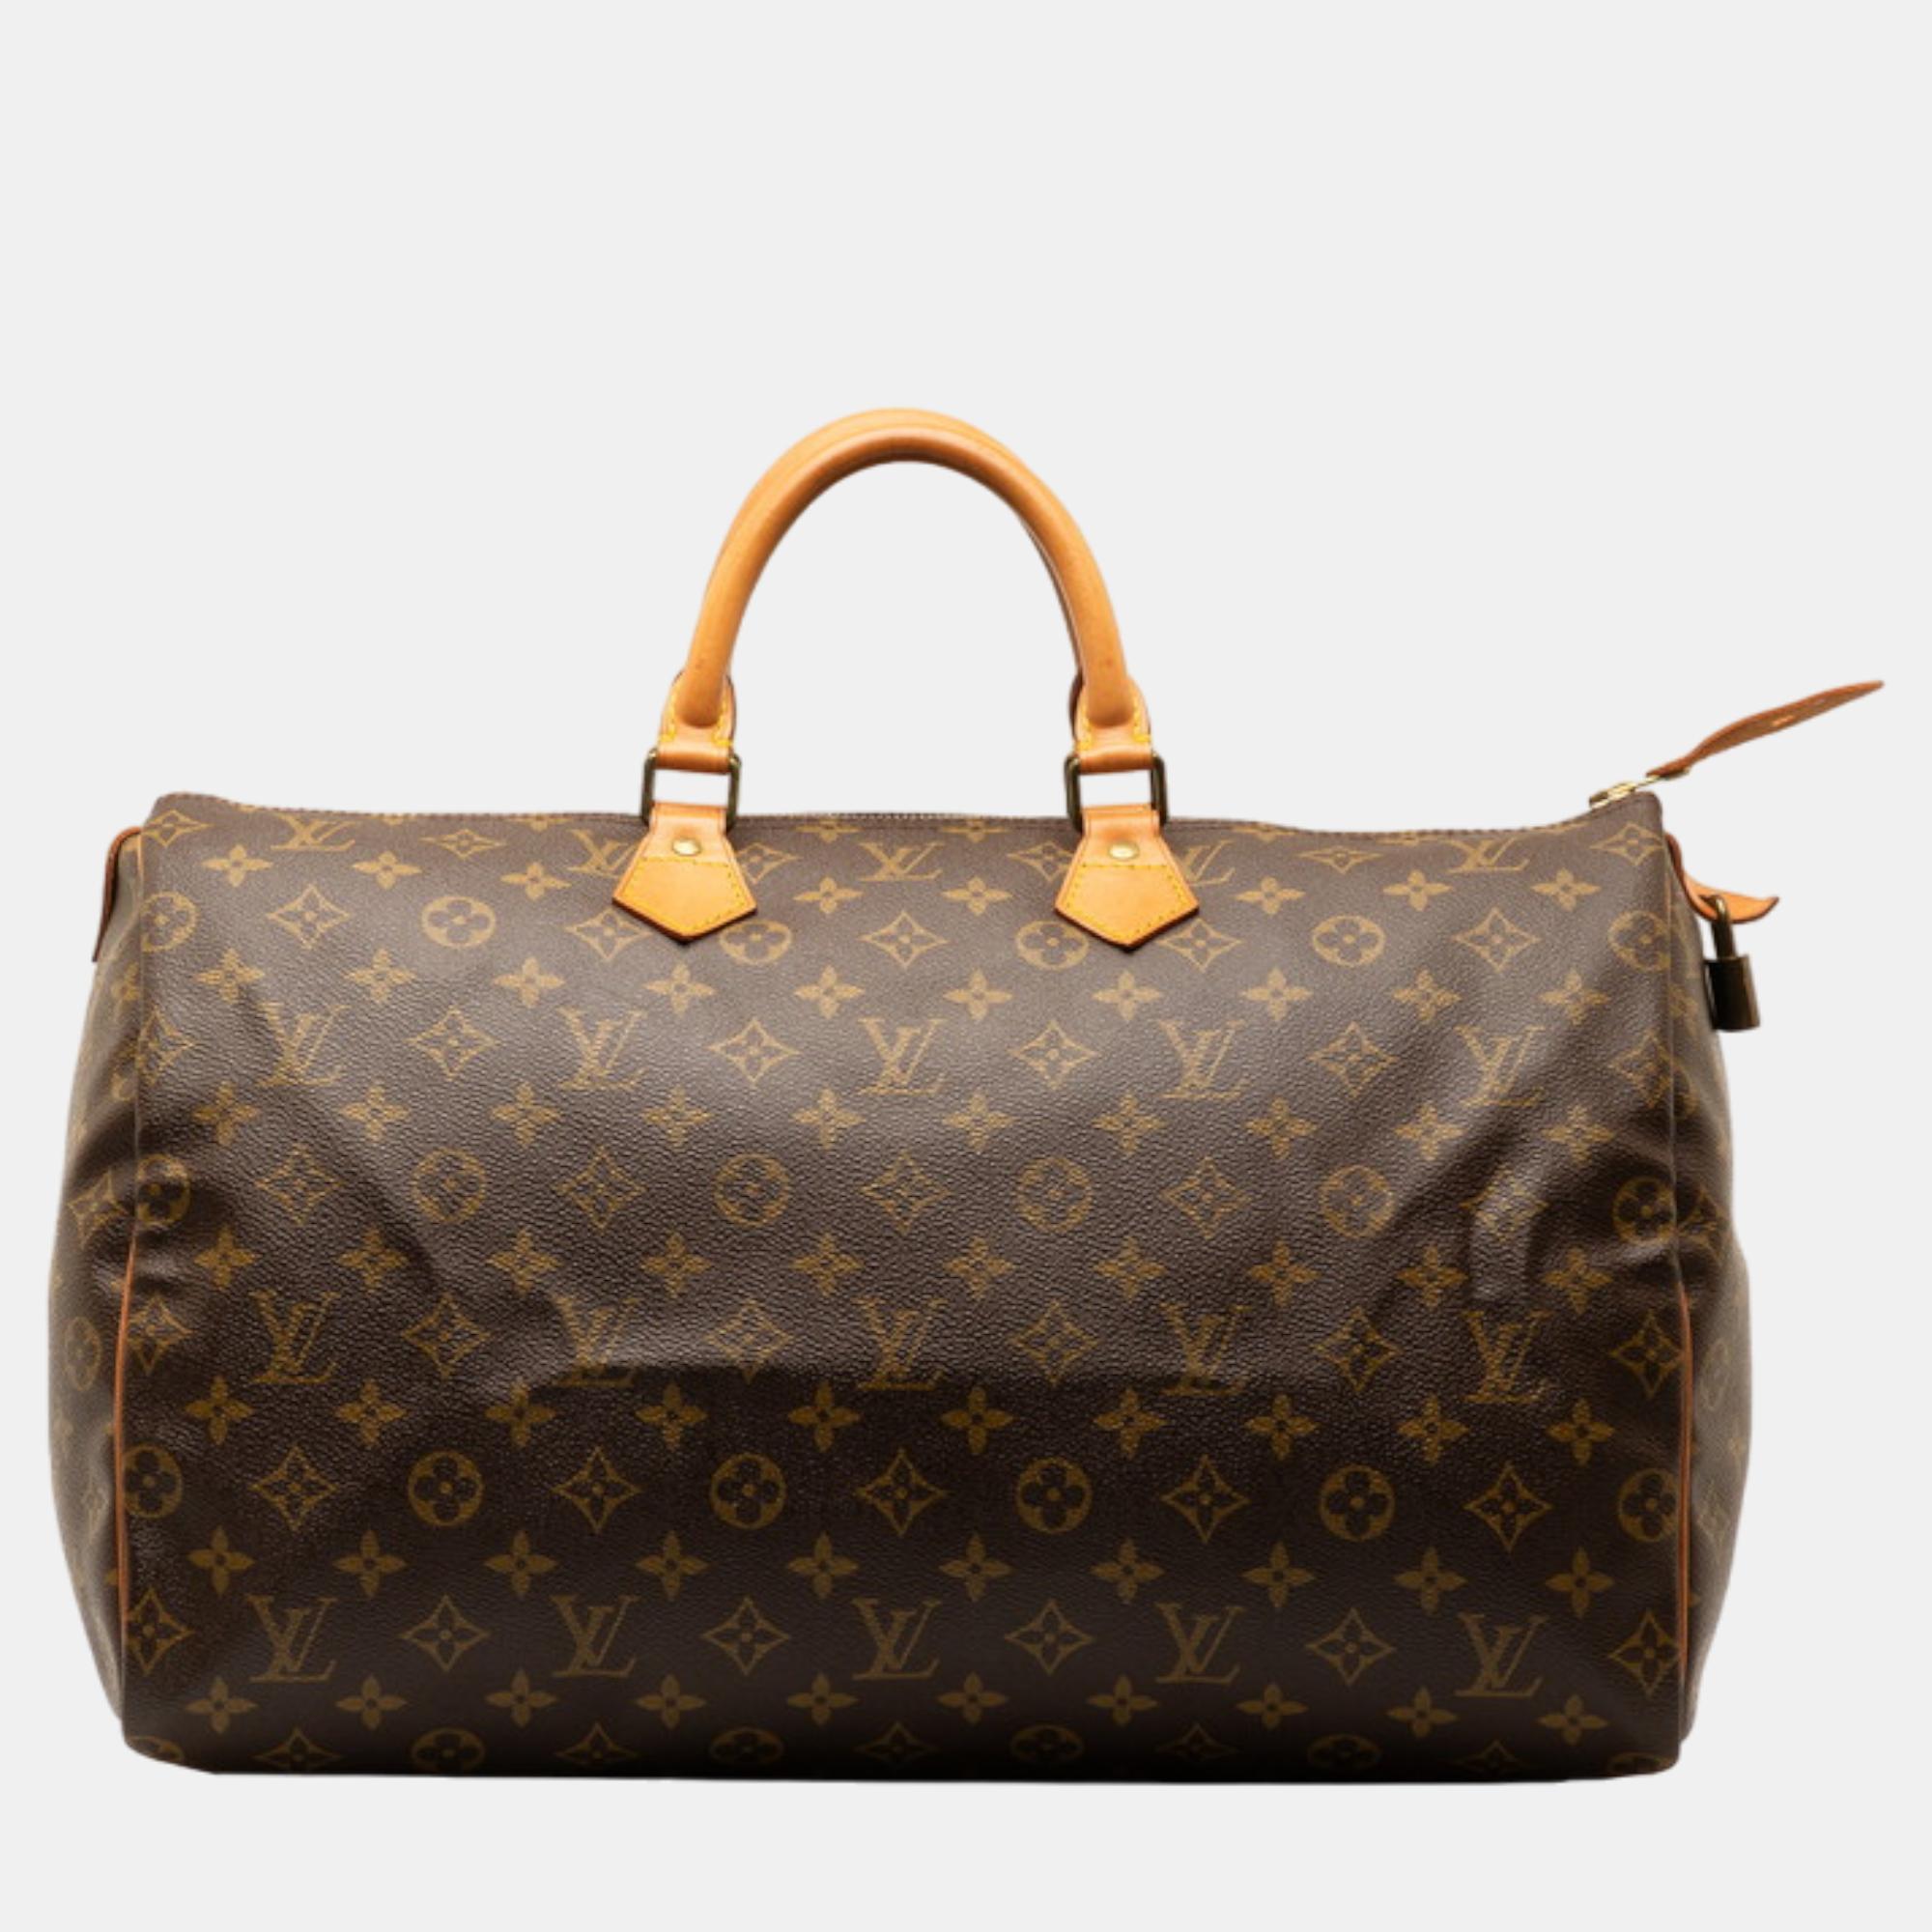 Louis vuitton brown canvas large speedy satchel bag